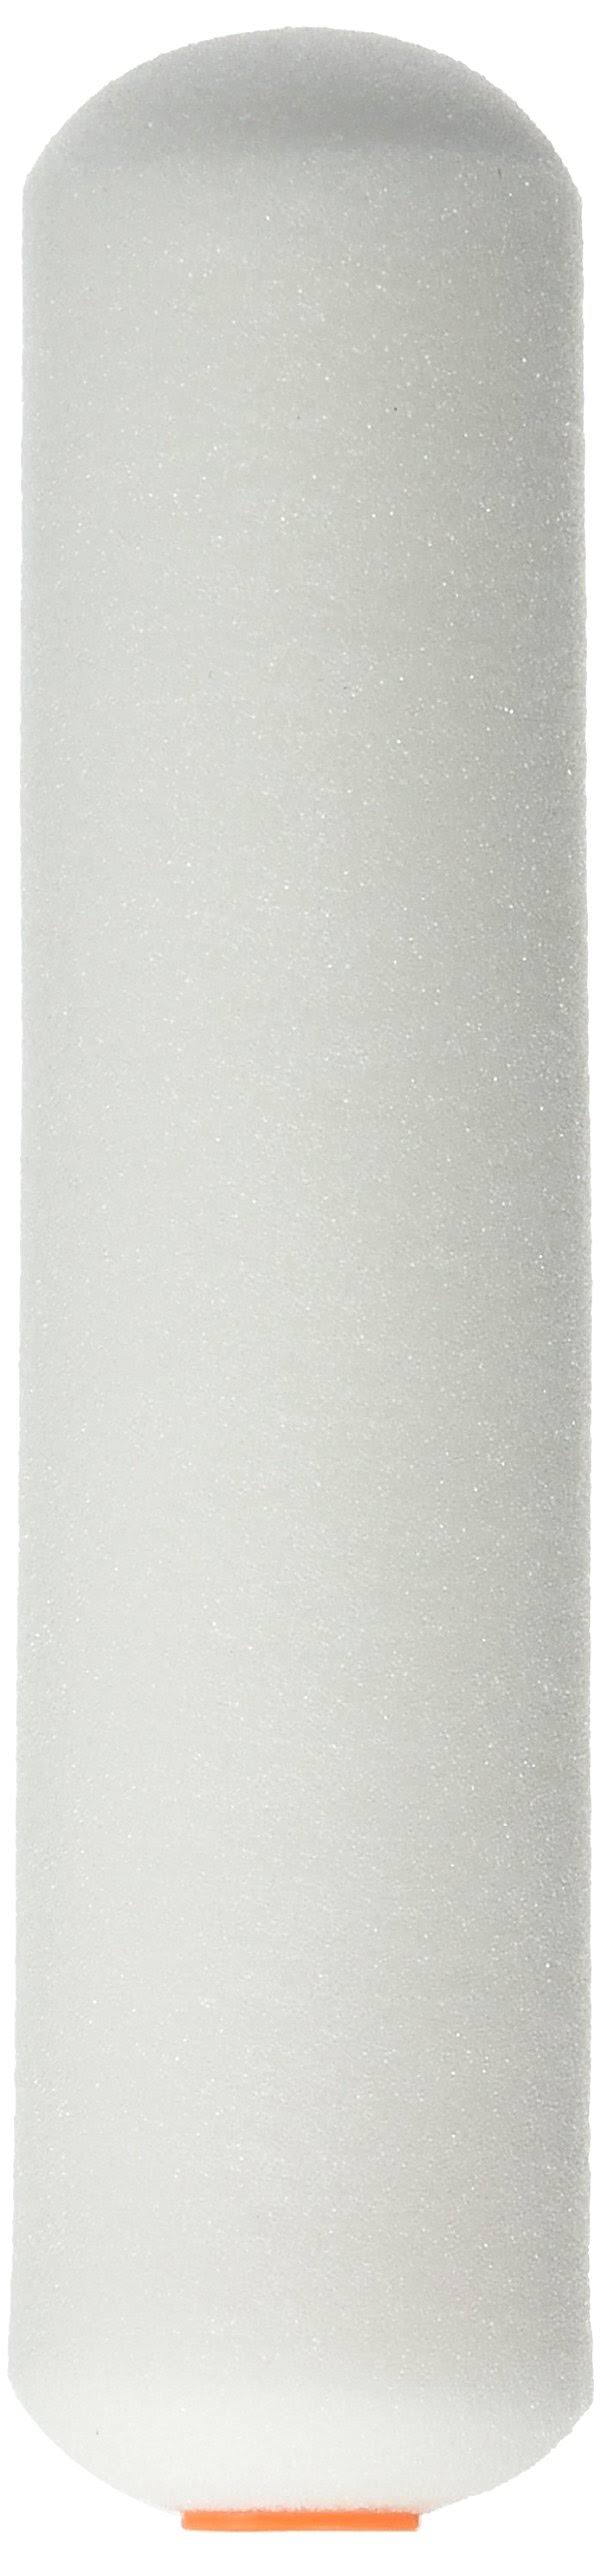 Linzer High Density White Foam Mini Roller Cover - 6", 2 Pack